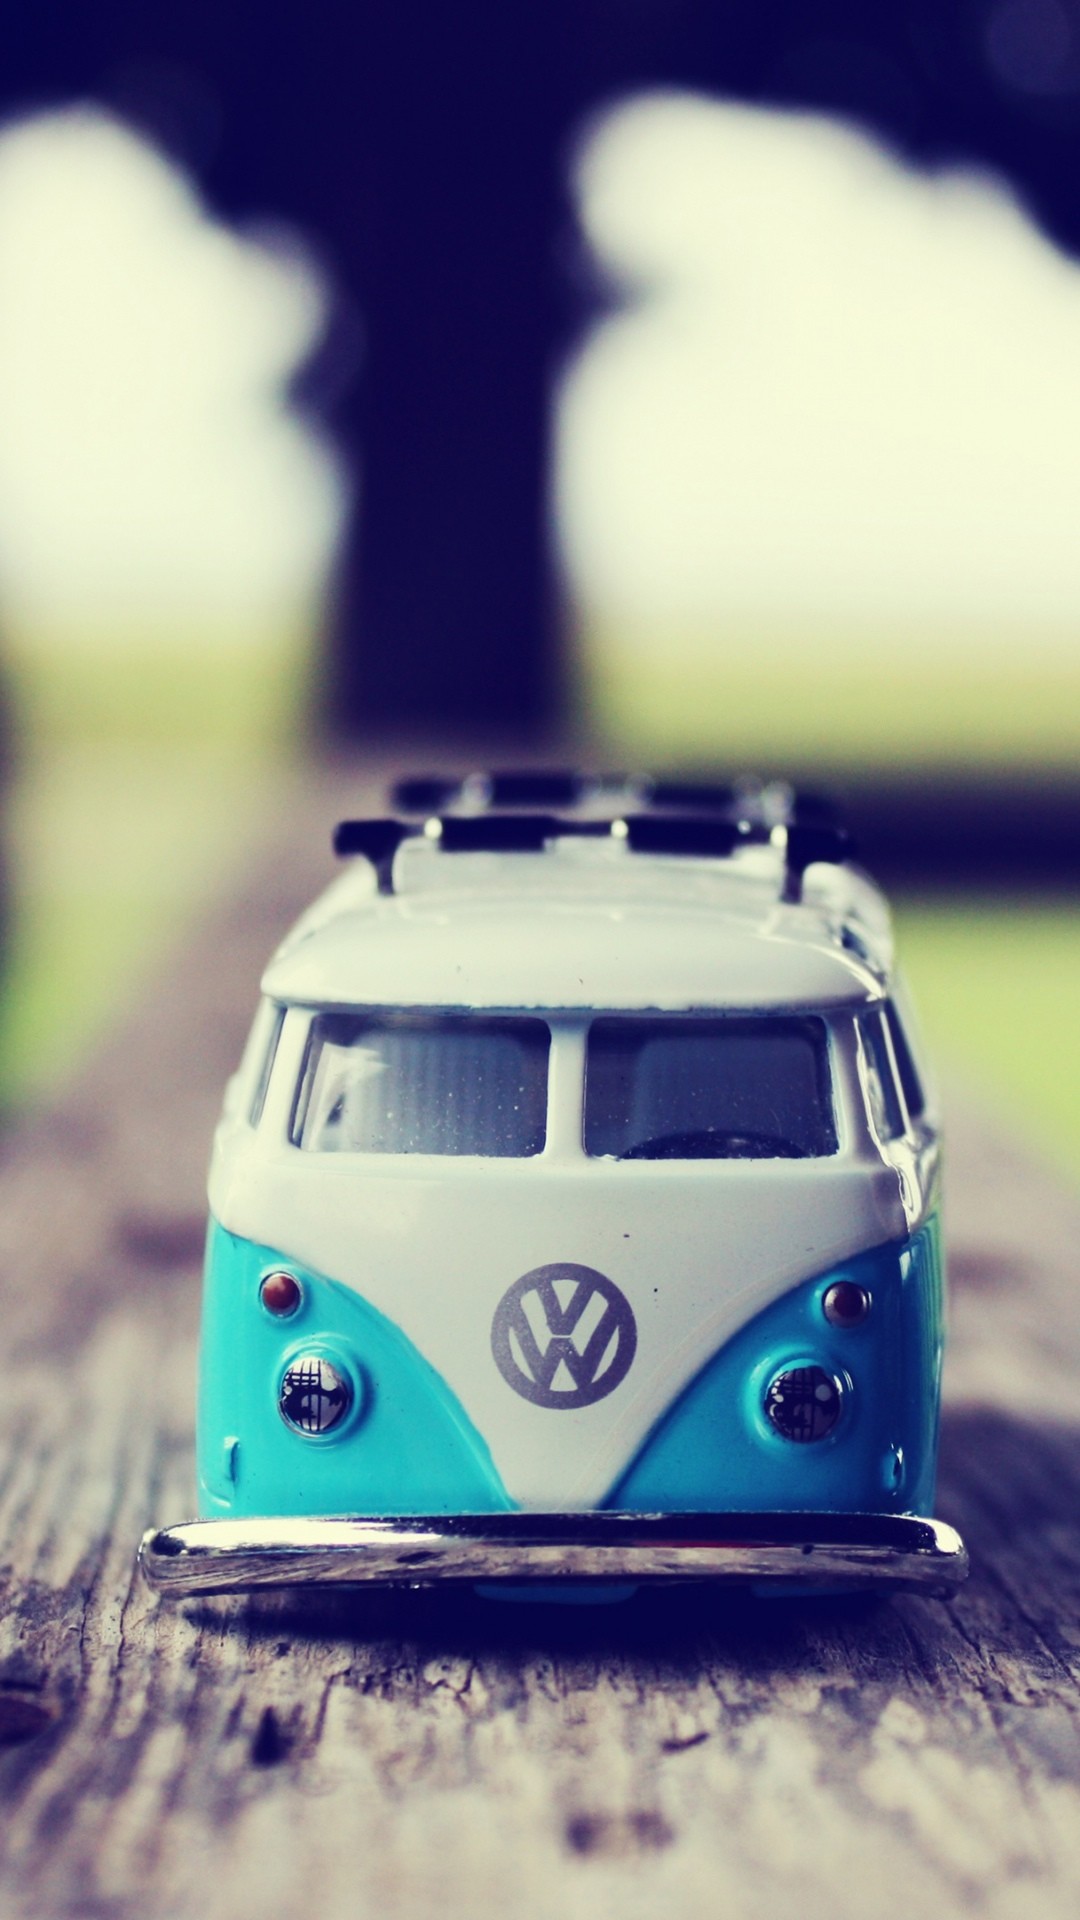 1080x1920 Miniature Volkswagen Van iPhone 6 Plus HD Wallpaper -  http://freebestpicture.com